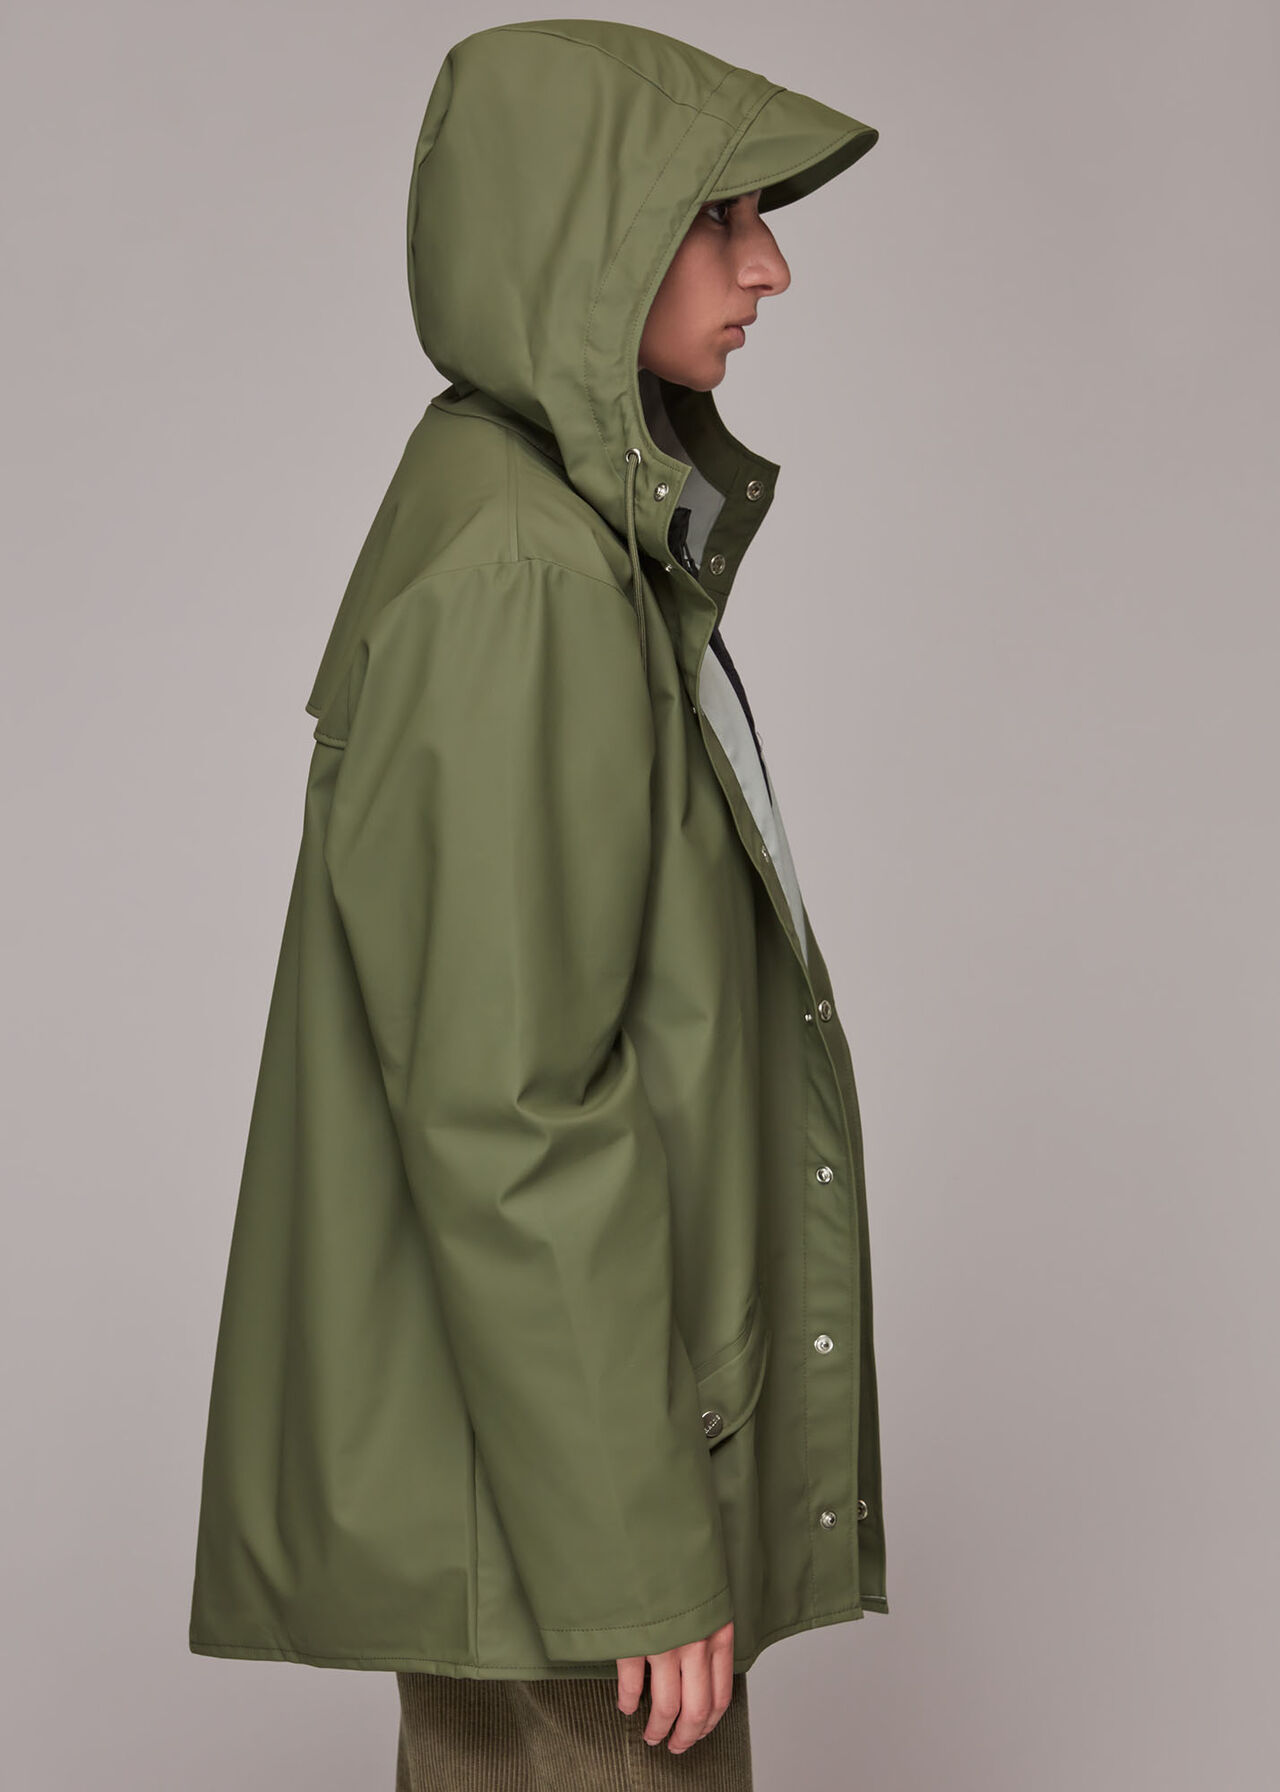 Rains Hooded Jacket